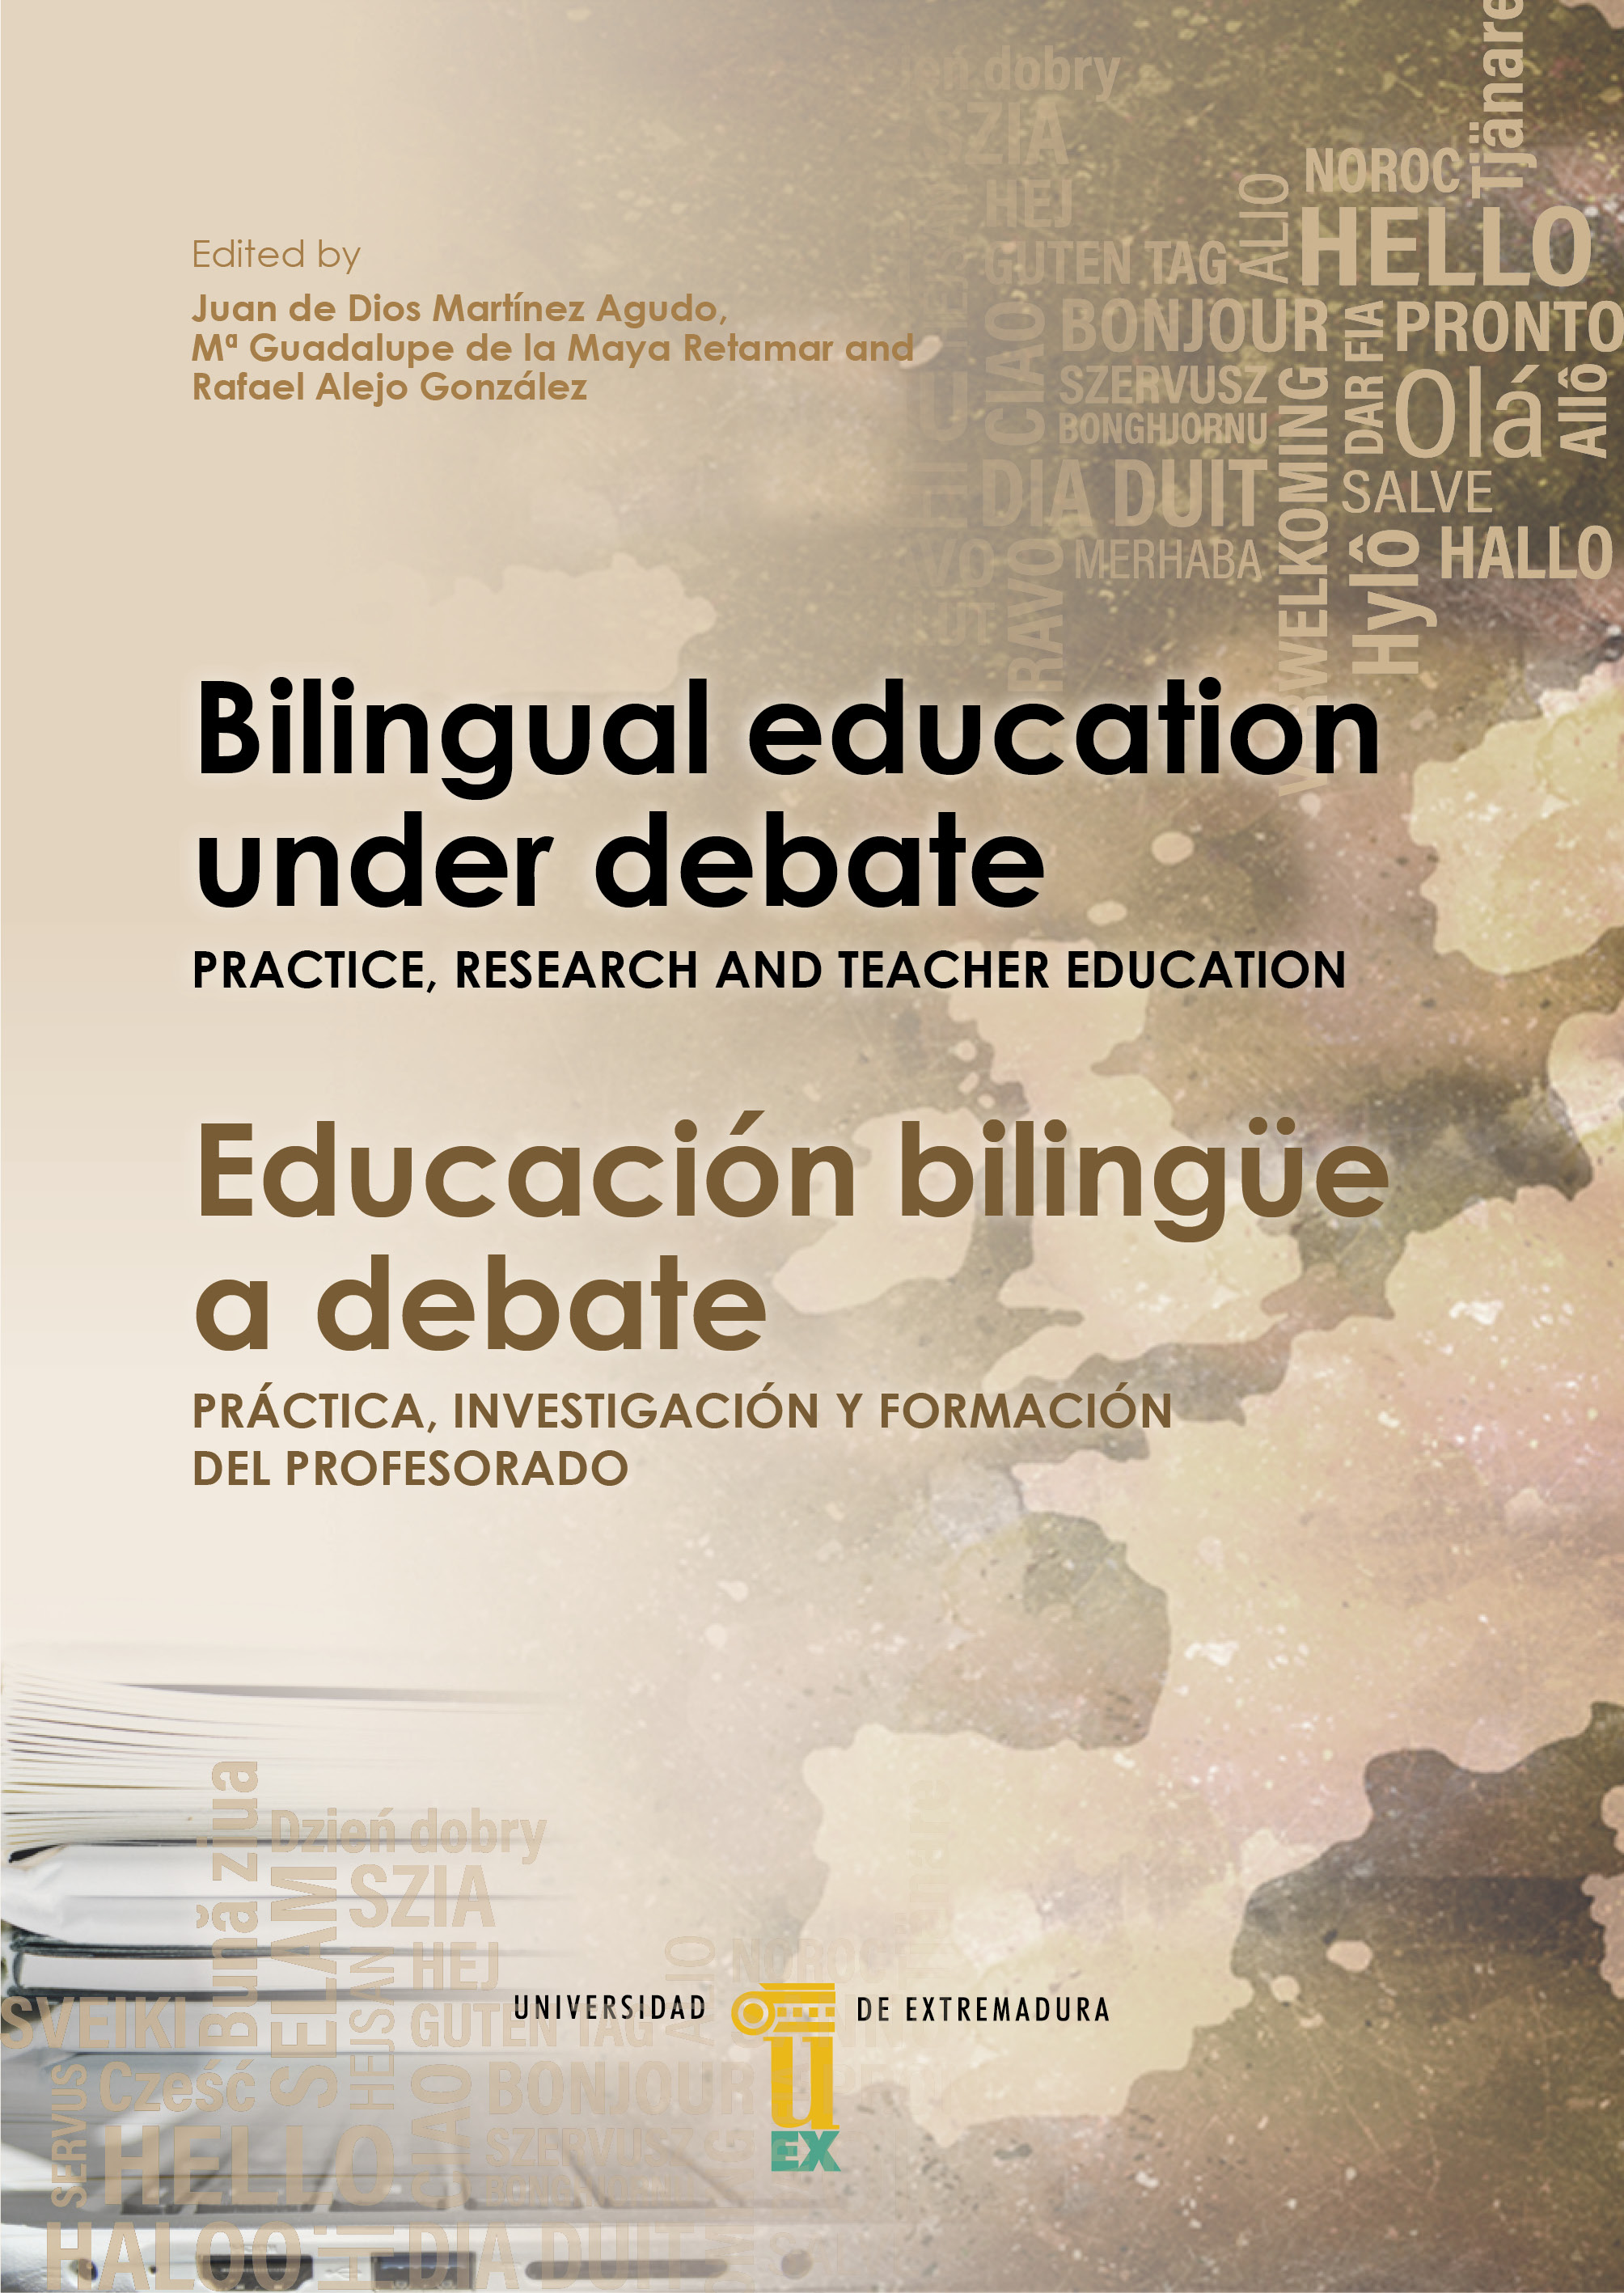 Imagen de portada del libro Bilingual education under debate